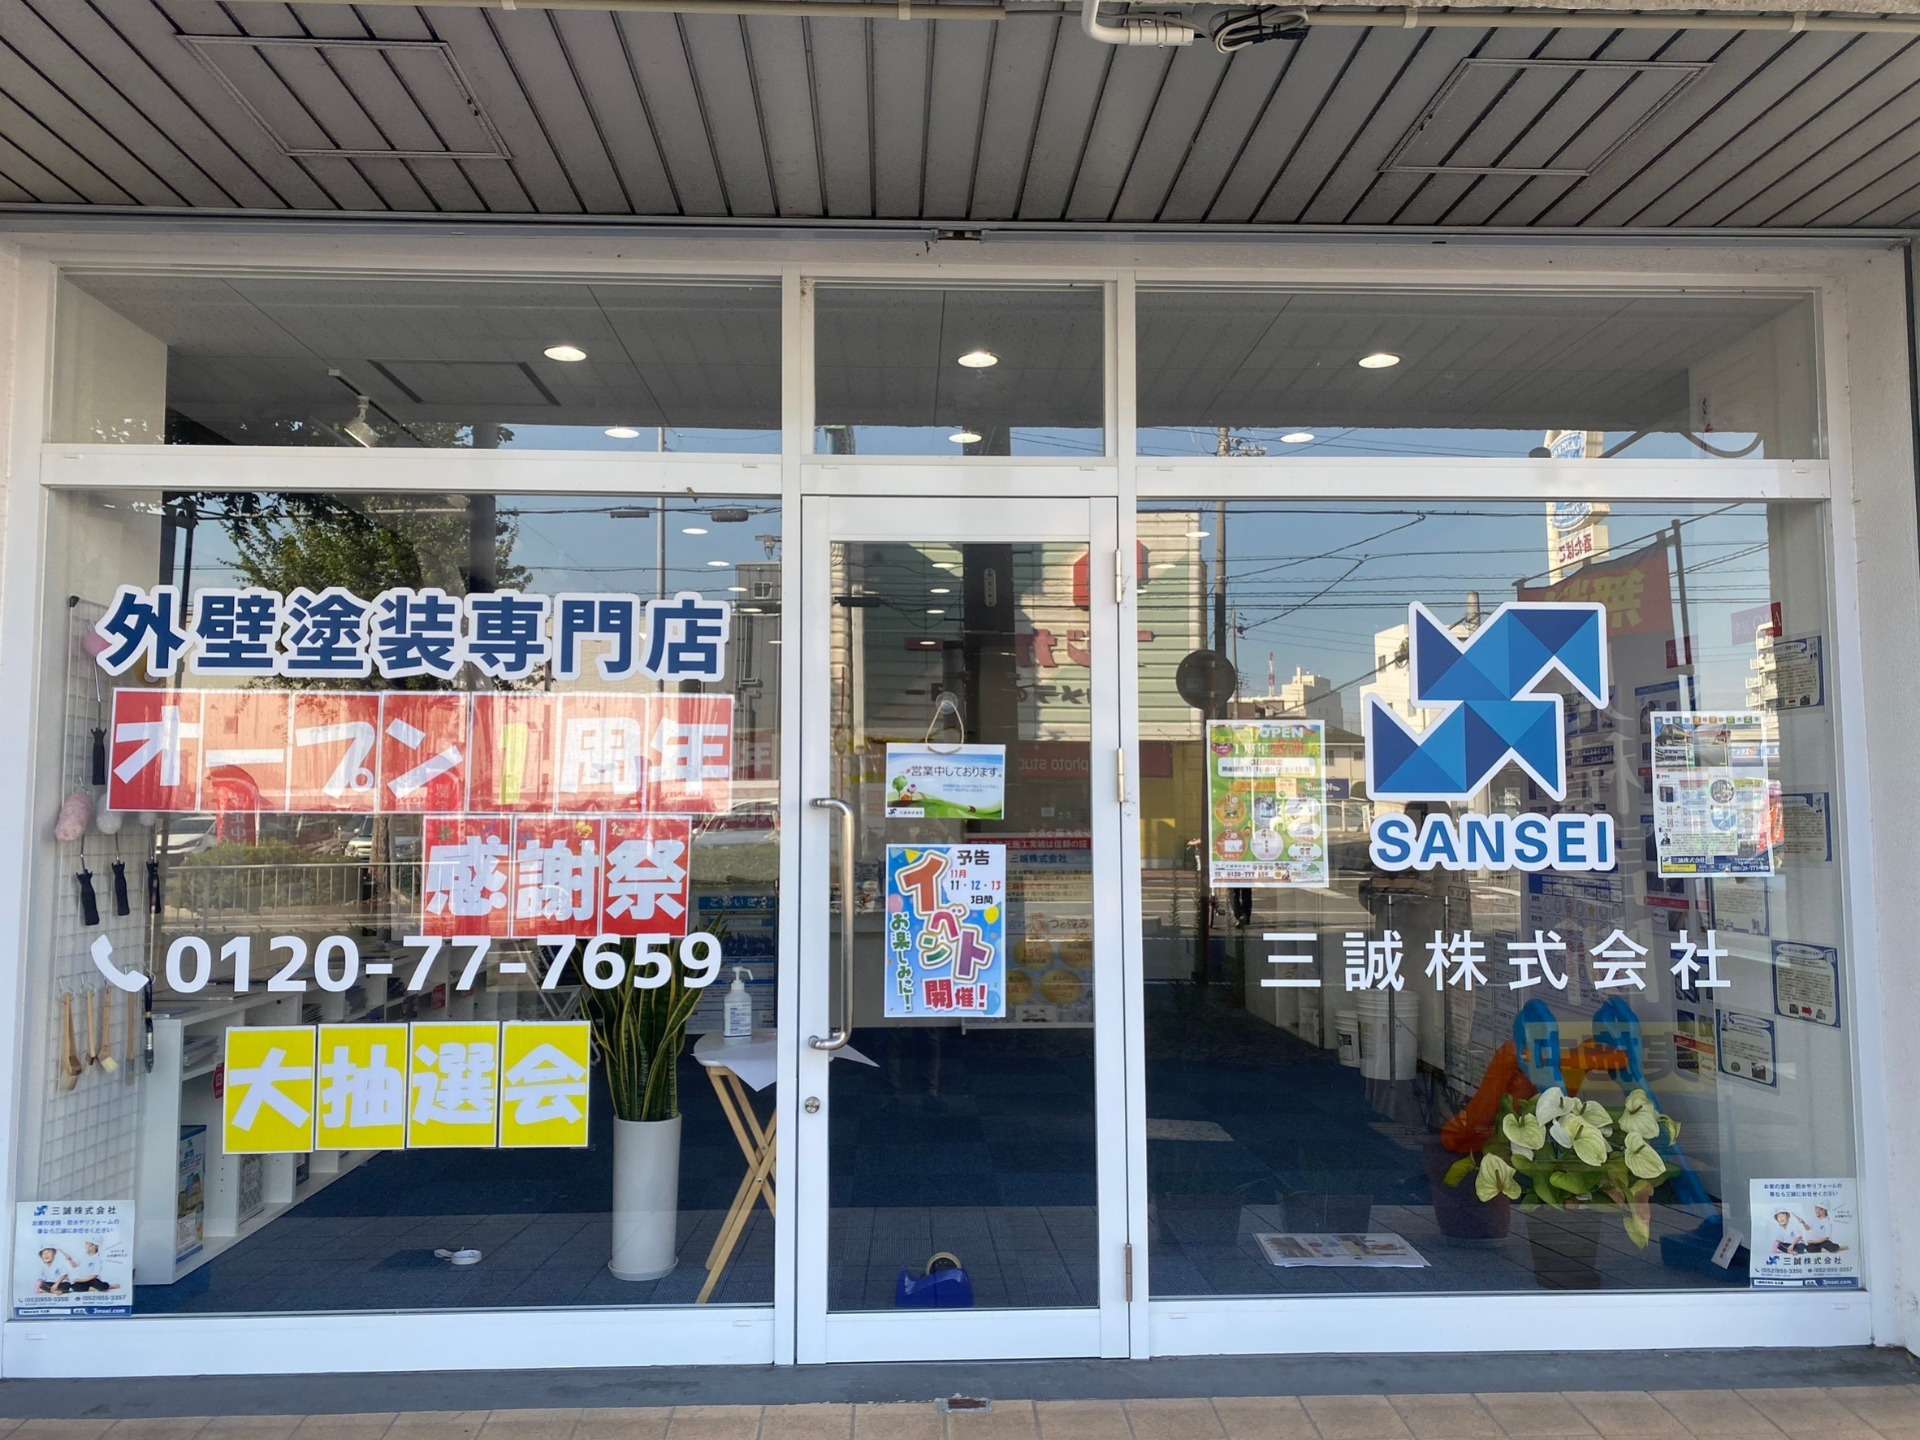 愛知県名古屋市の塗装会社 三誠株式会社 塗装ショールームのご紹介🌻外壁塗装をお考えの方は是非三誠株式会社にお任せください✨